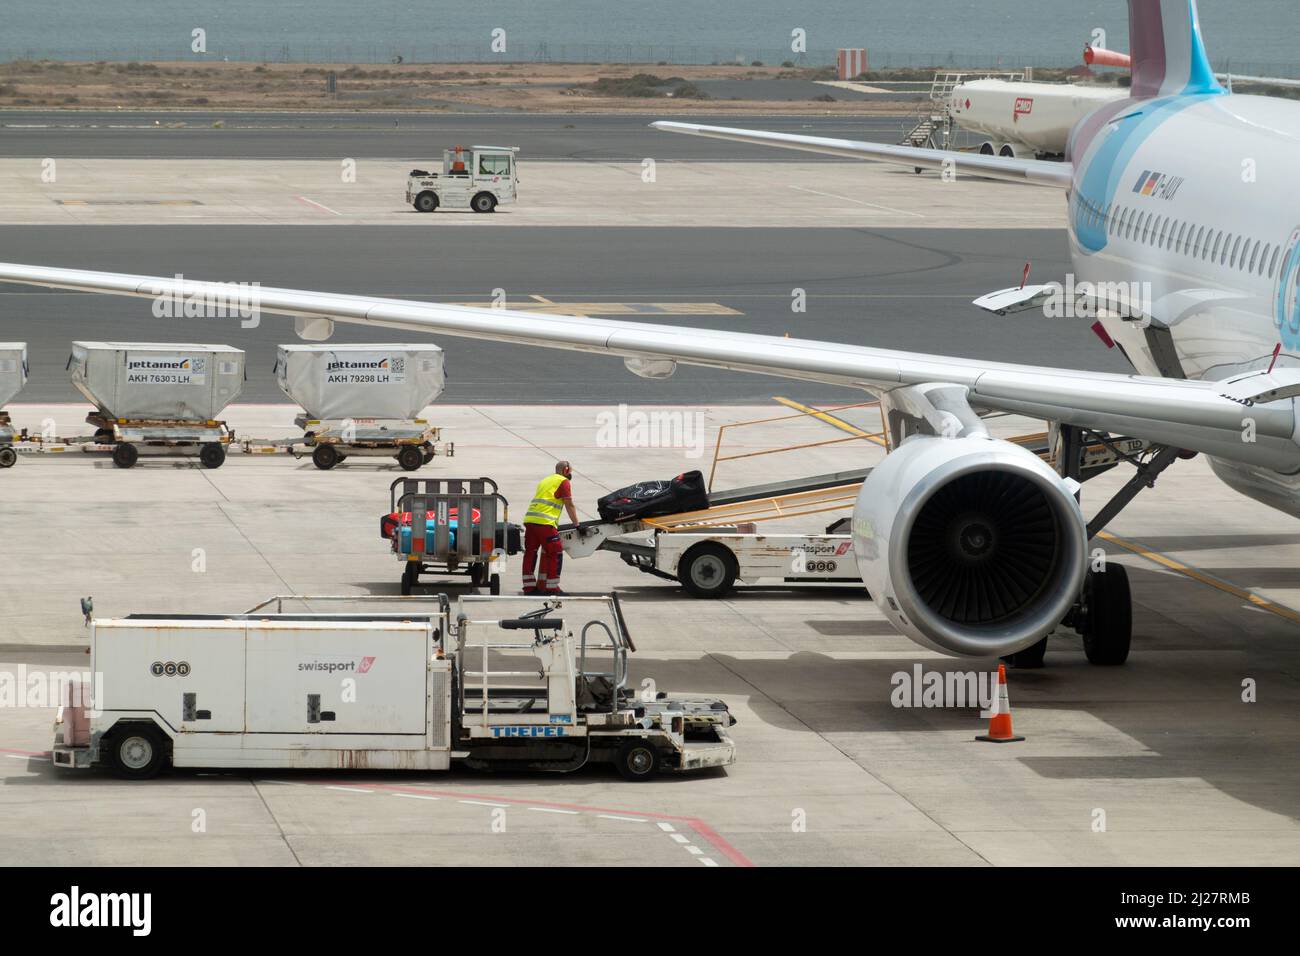 Ein Gepäckhandler, der für Swissport arbeitet, verlädt Passagierkoffer und Gepäck auf ein Flugzeug, das für den Start auf einer Start- und Landebahn des Flughafens vorbereitet ist. Stockfoto